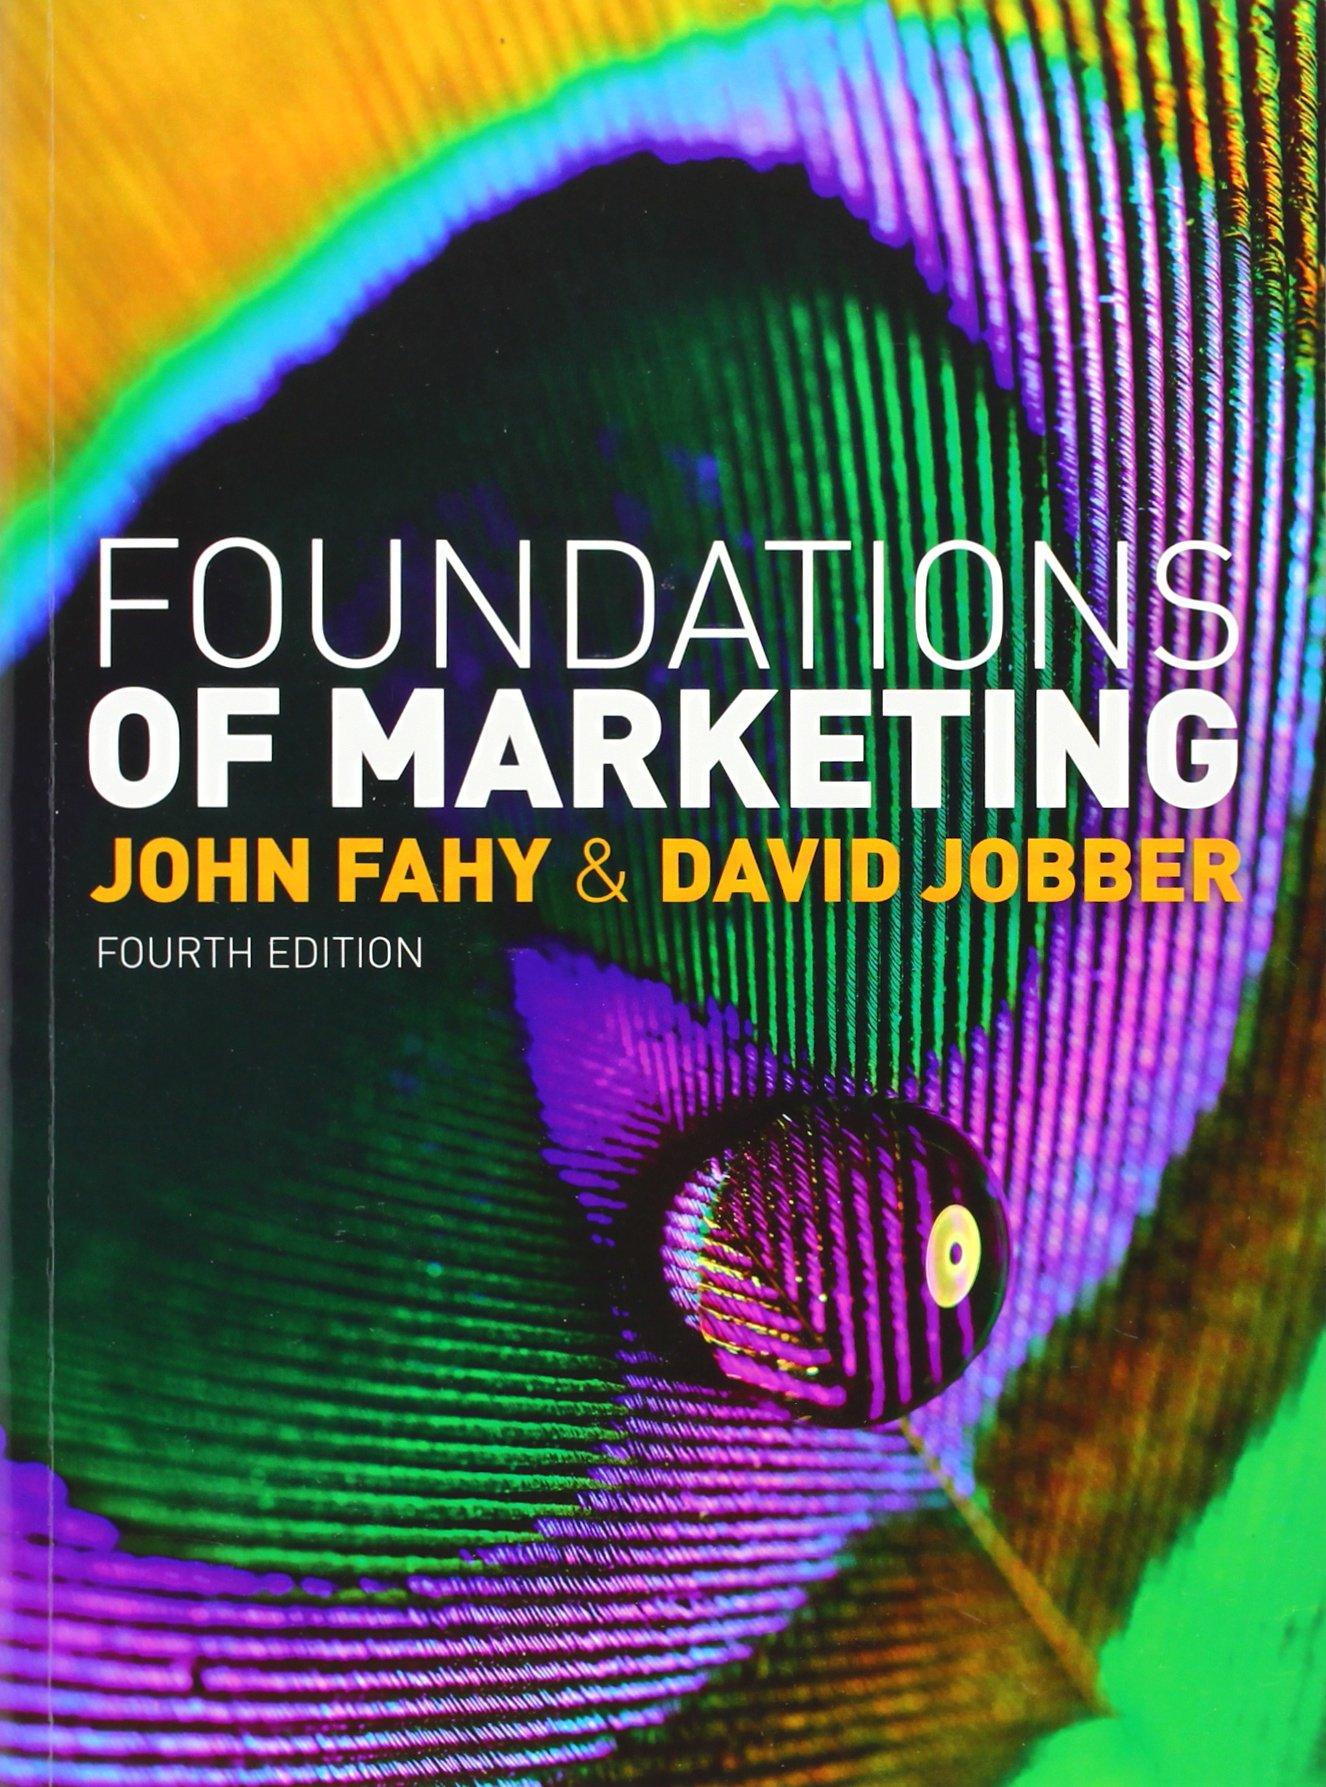 foundations of marketing 4th edition john fahy, david fahy jobber 0077137019, 9780077137014